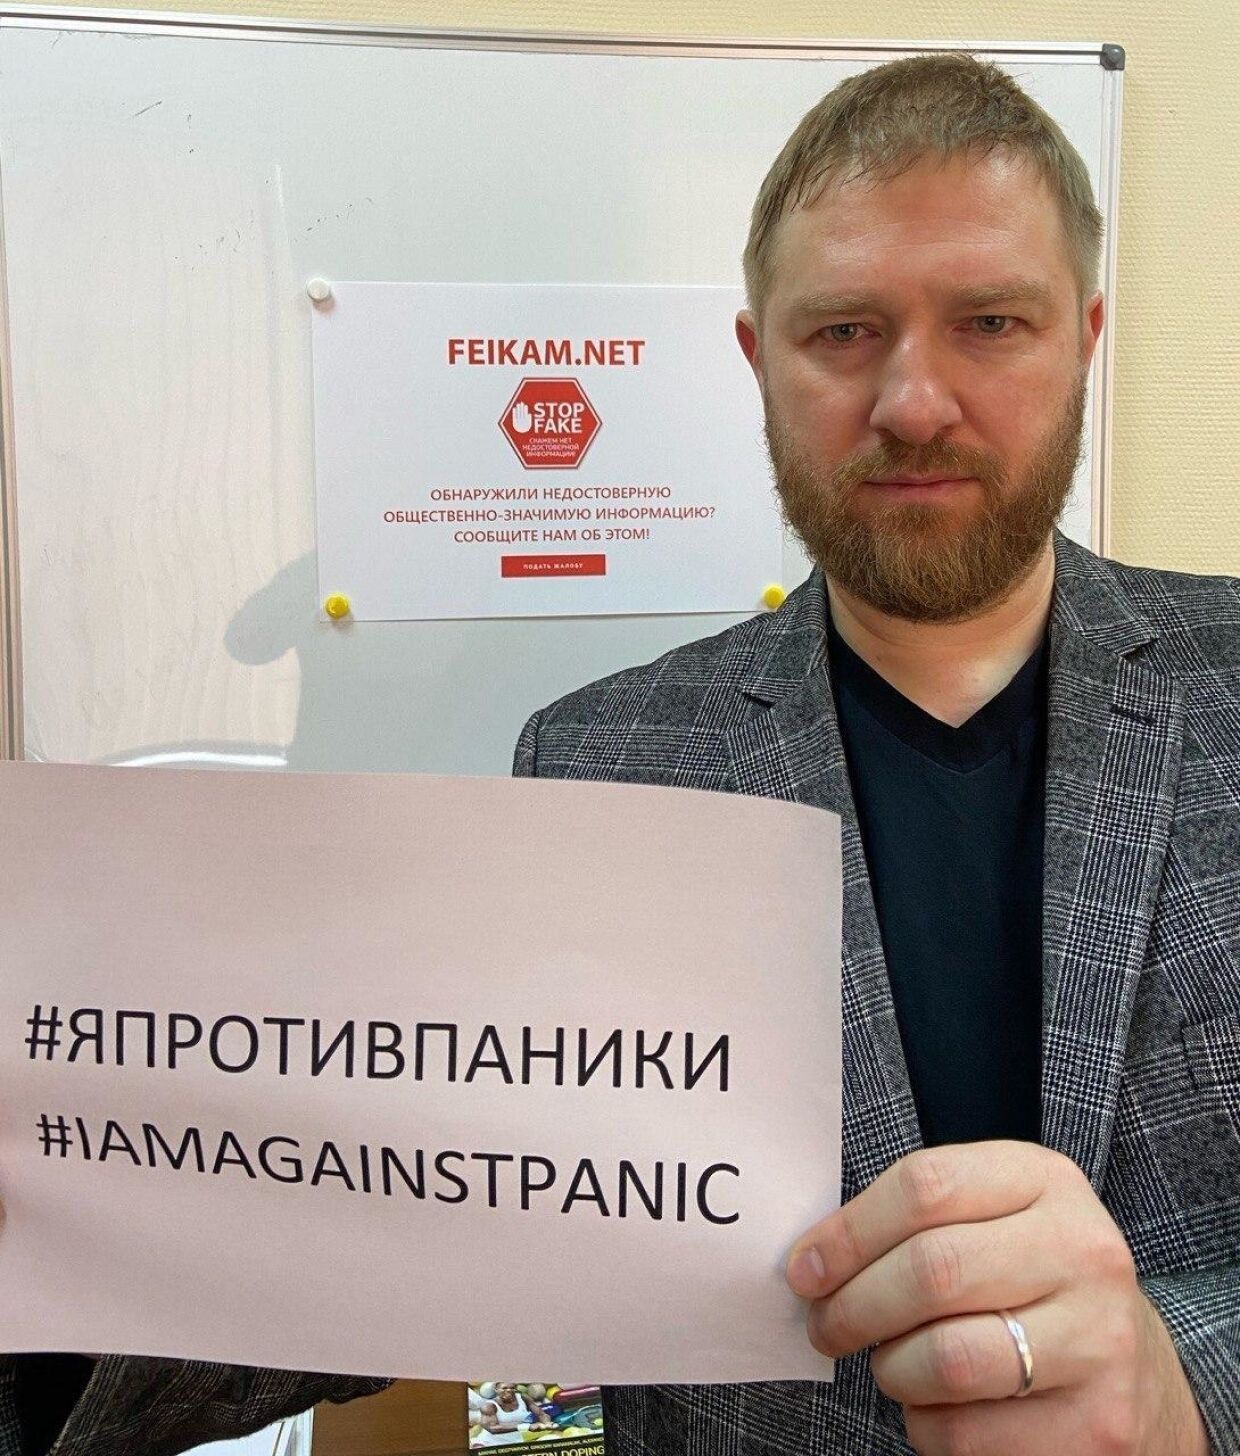 Защита Рунета в условиях пандемии становится вопросом выживания, считает Александр Малькевич.